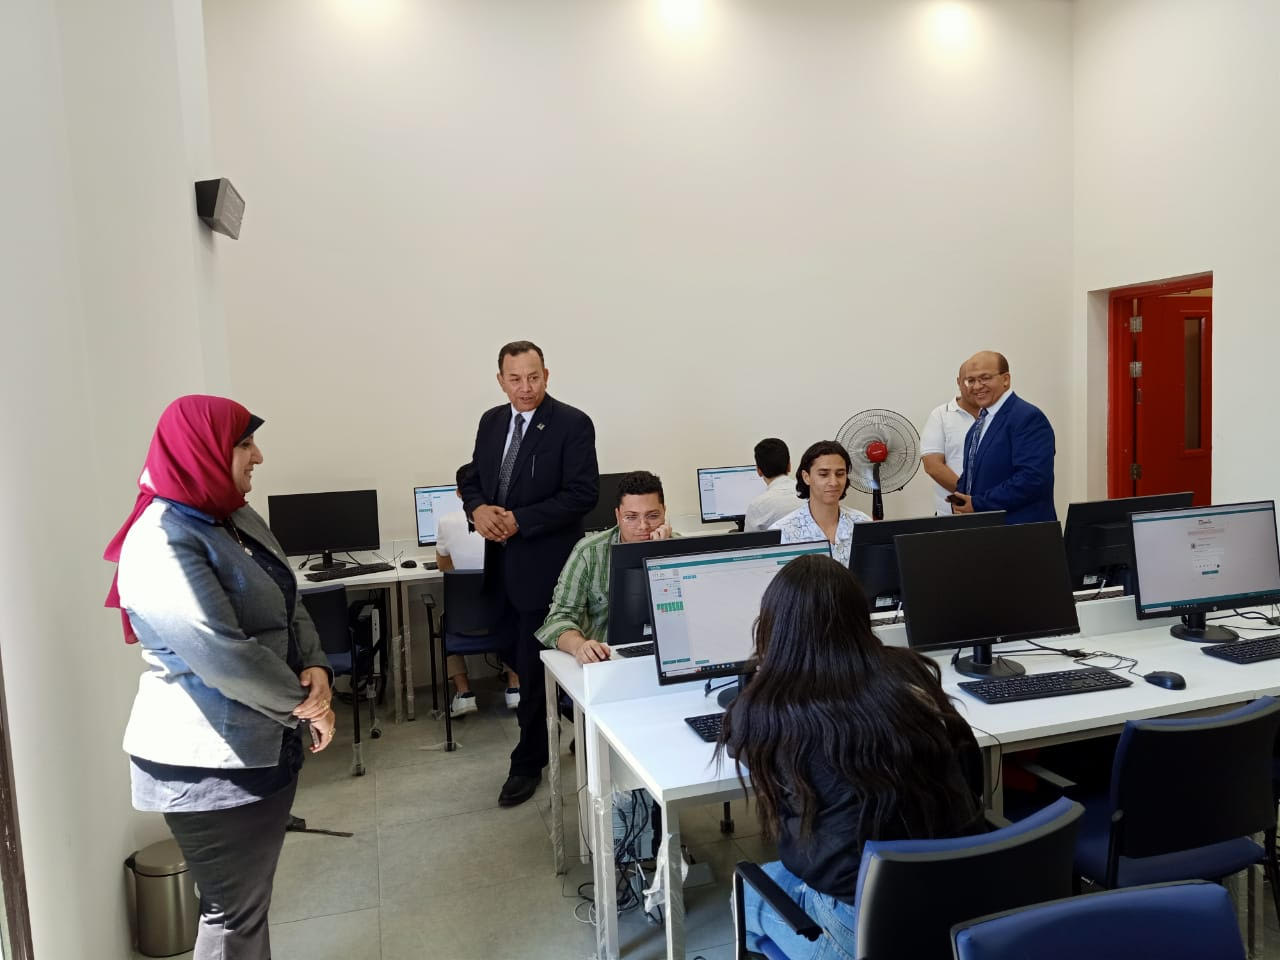 انطلاق اختبارات قبول الطلاب بالجامعات الأهلية بجامعة المنصورة الجديدة (8)